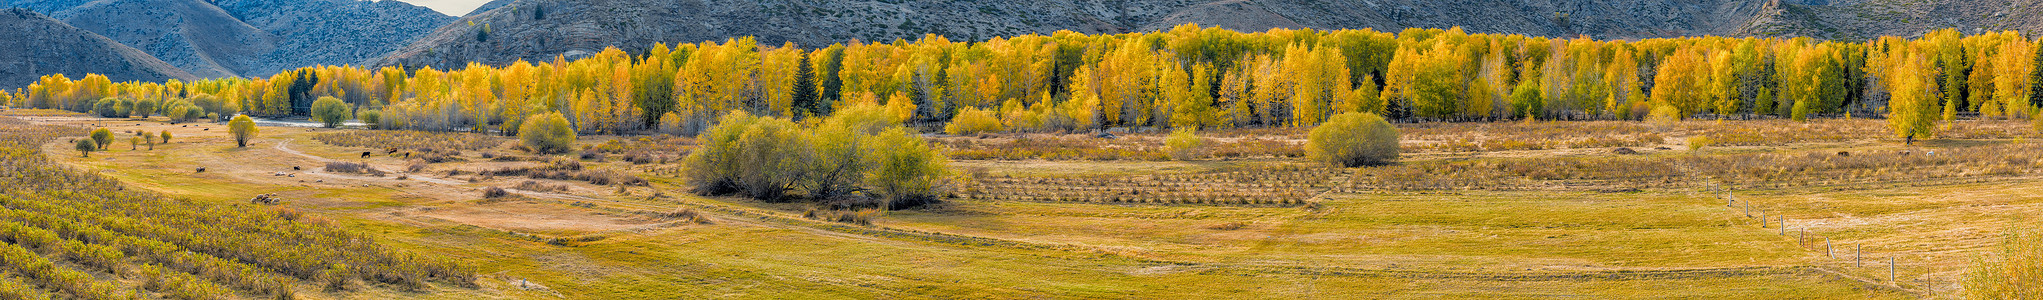 金色树素材北疆金秋草原白桦林全景背景